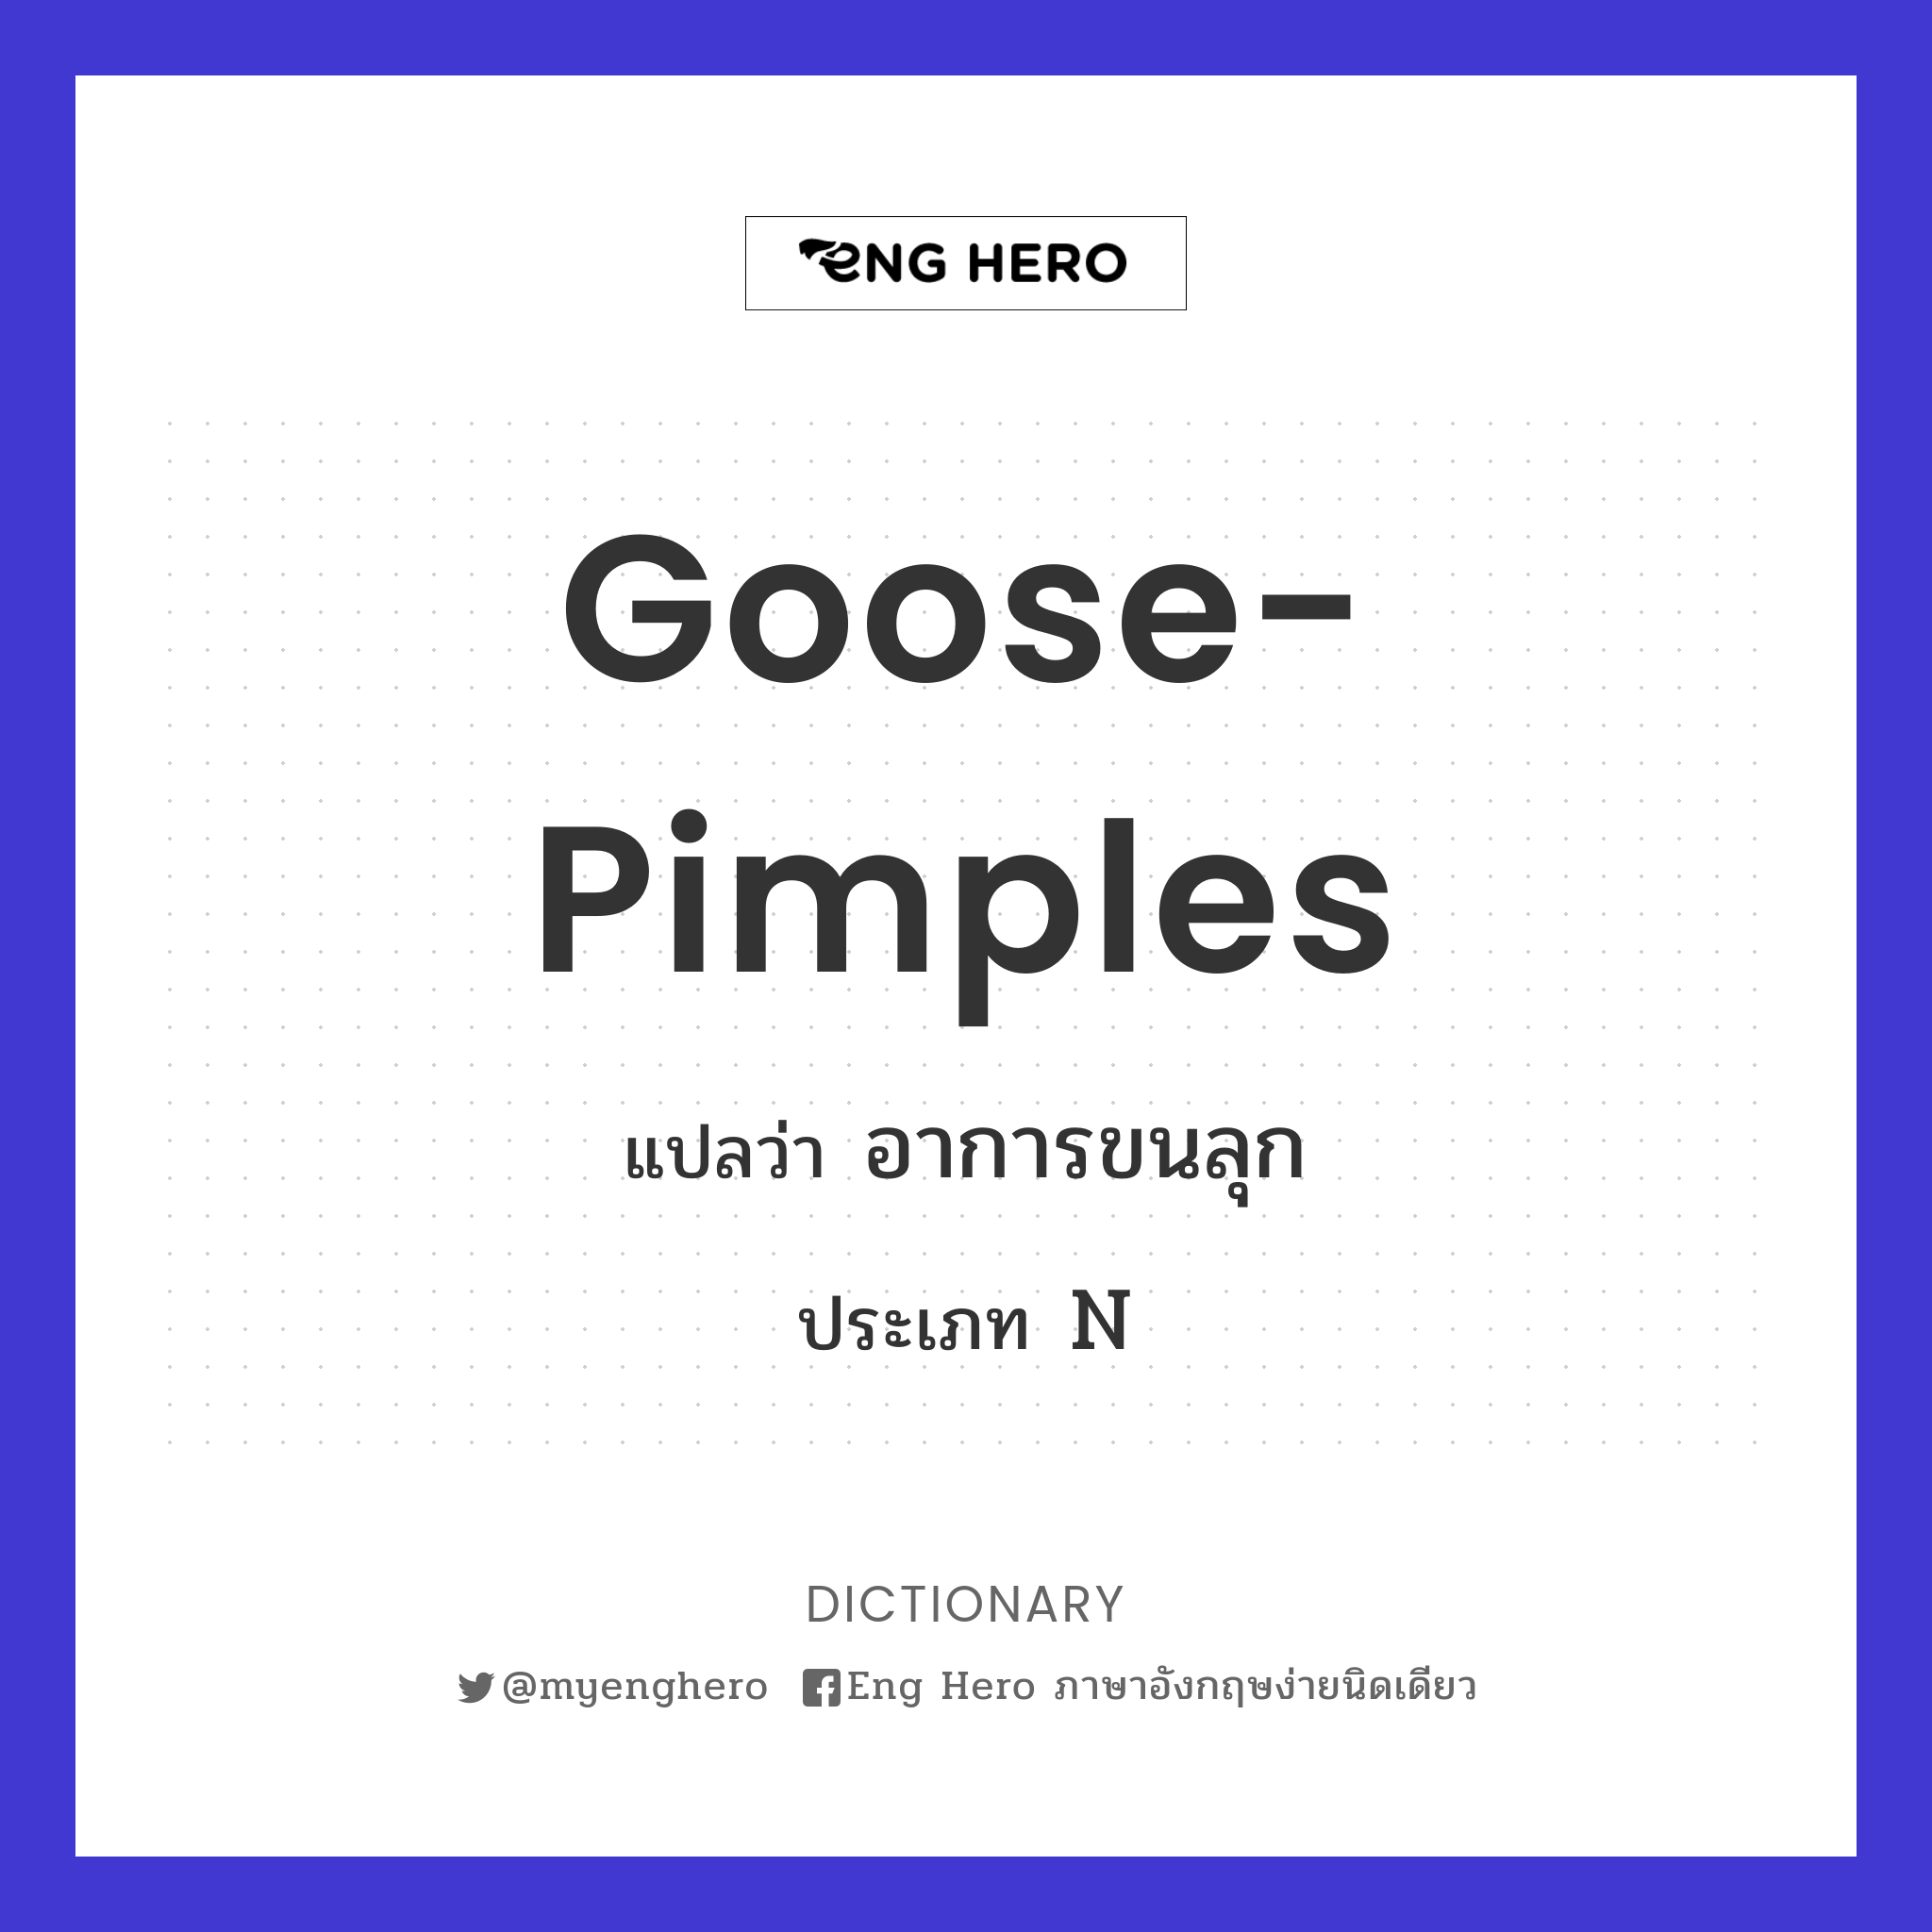 goose-pimples